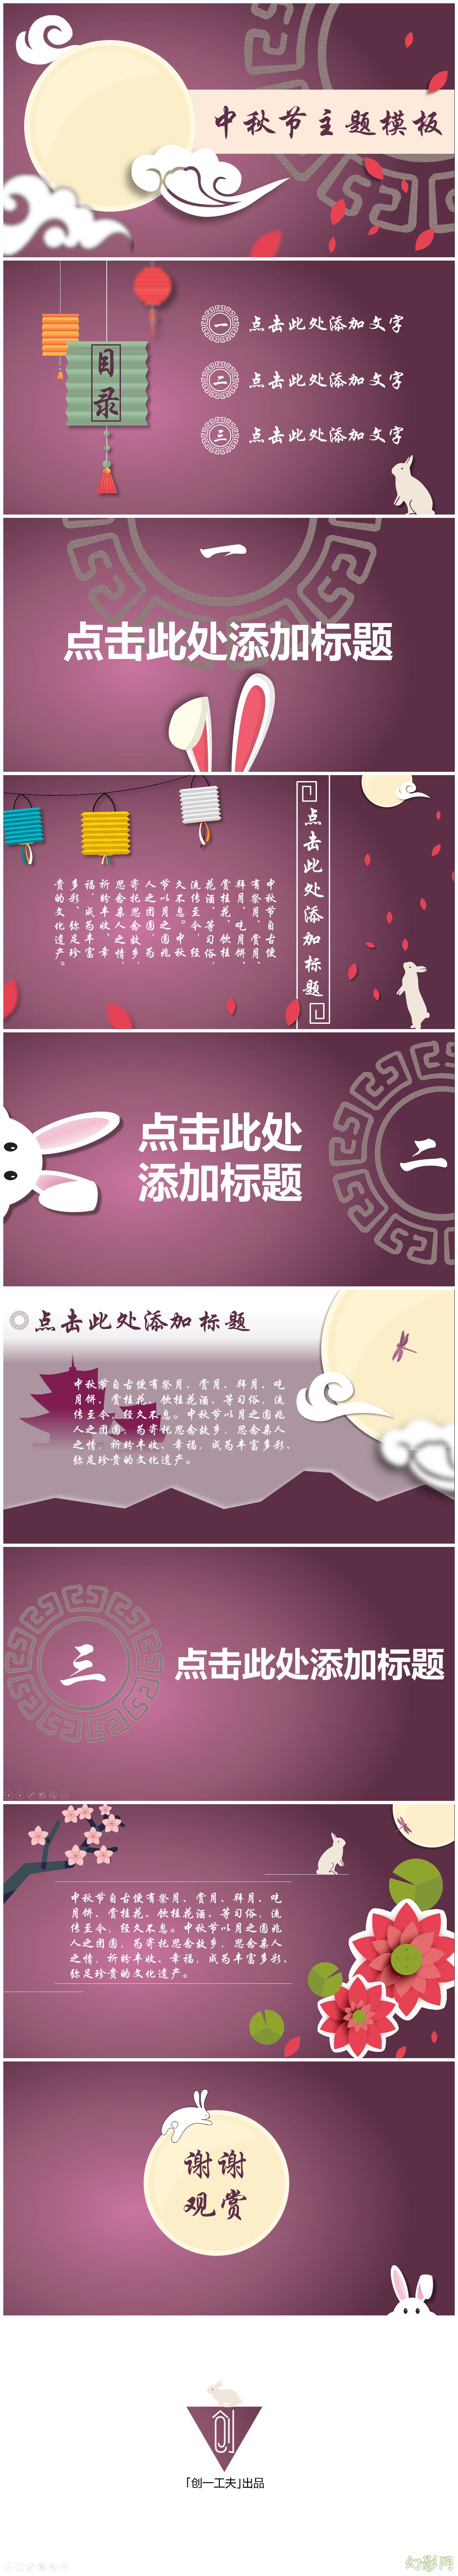 扁平紫色中国风微立体节日主题模板